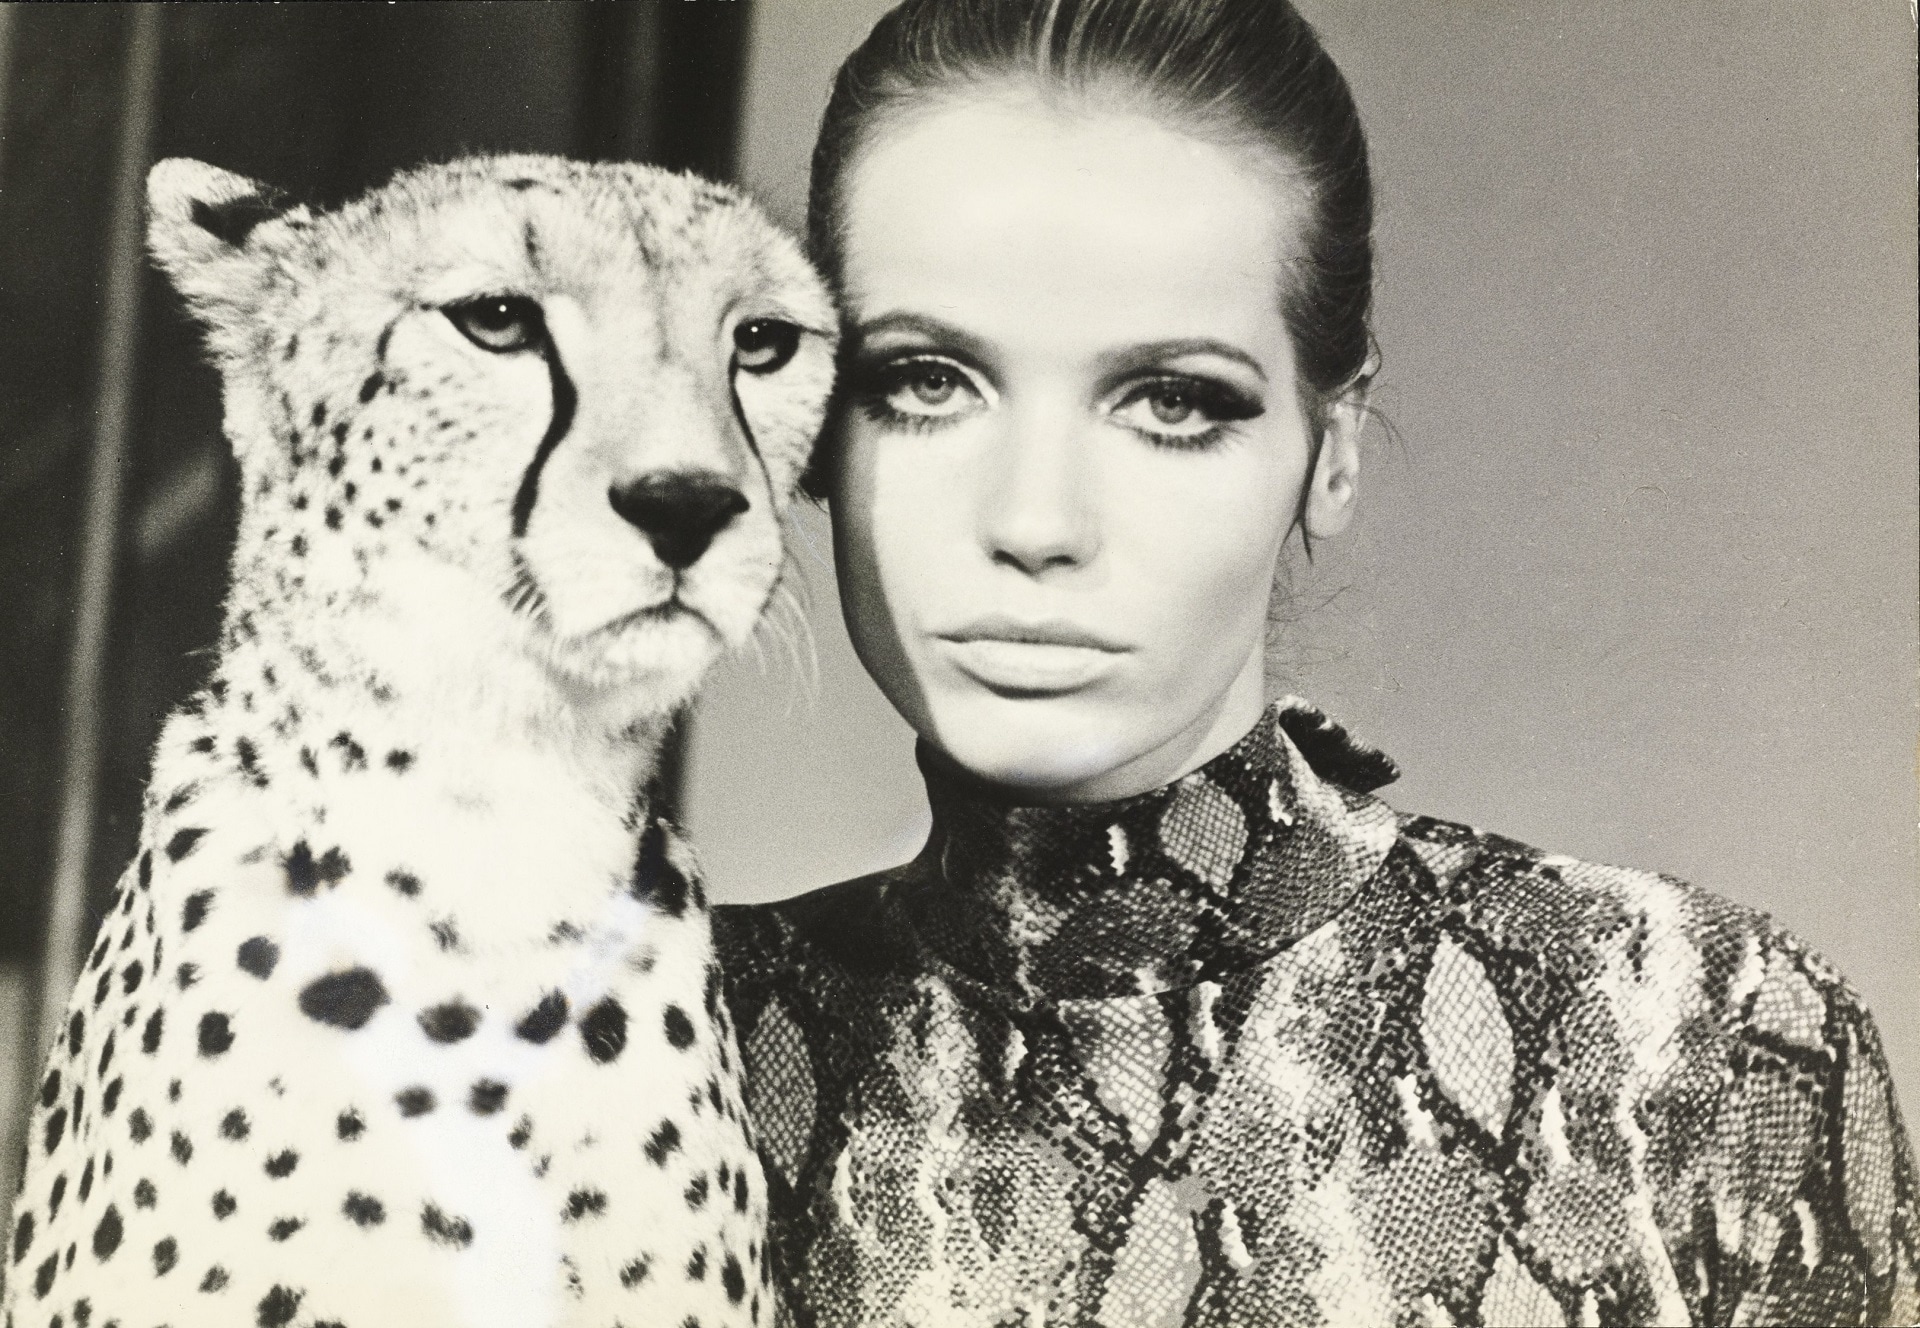 Franco Rubartelli, Veruschka, testa a testa con un ghepardo, 1967, Vogue © Condé Nast